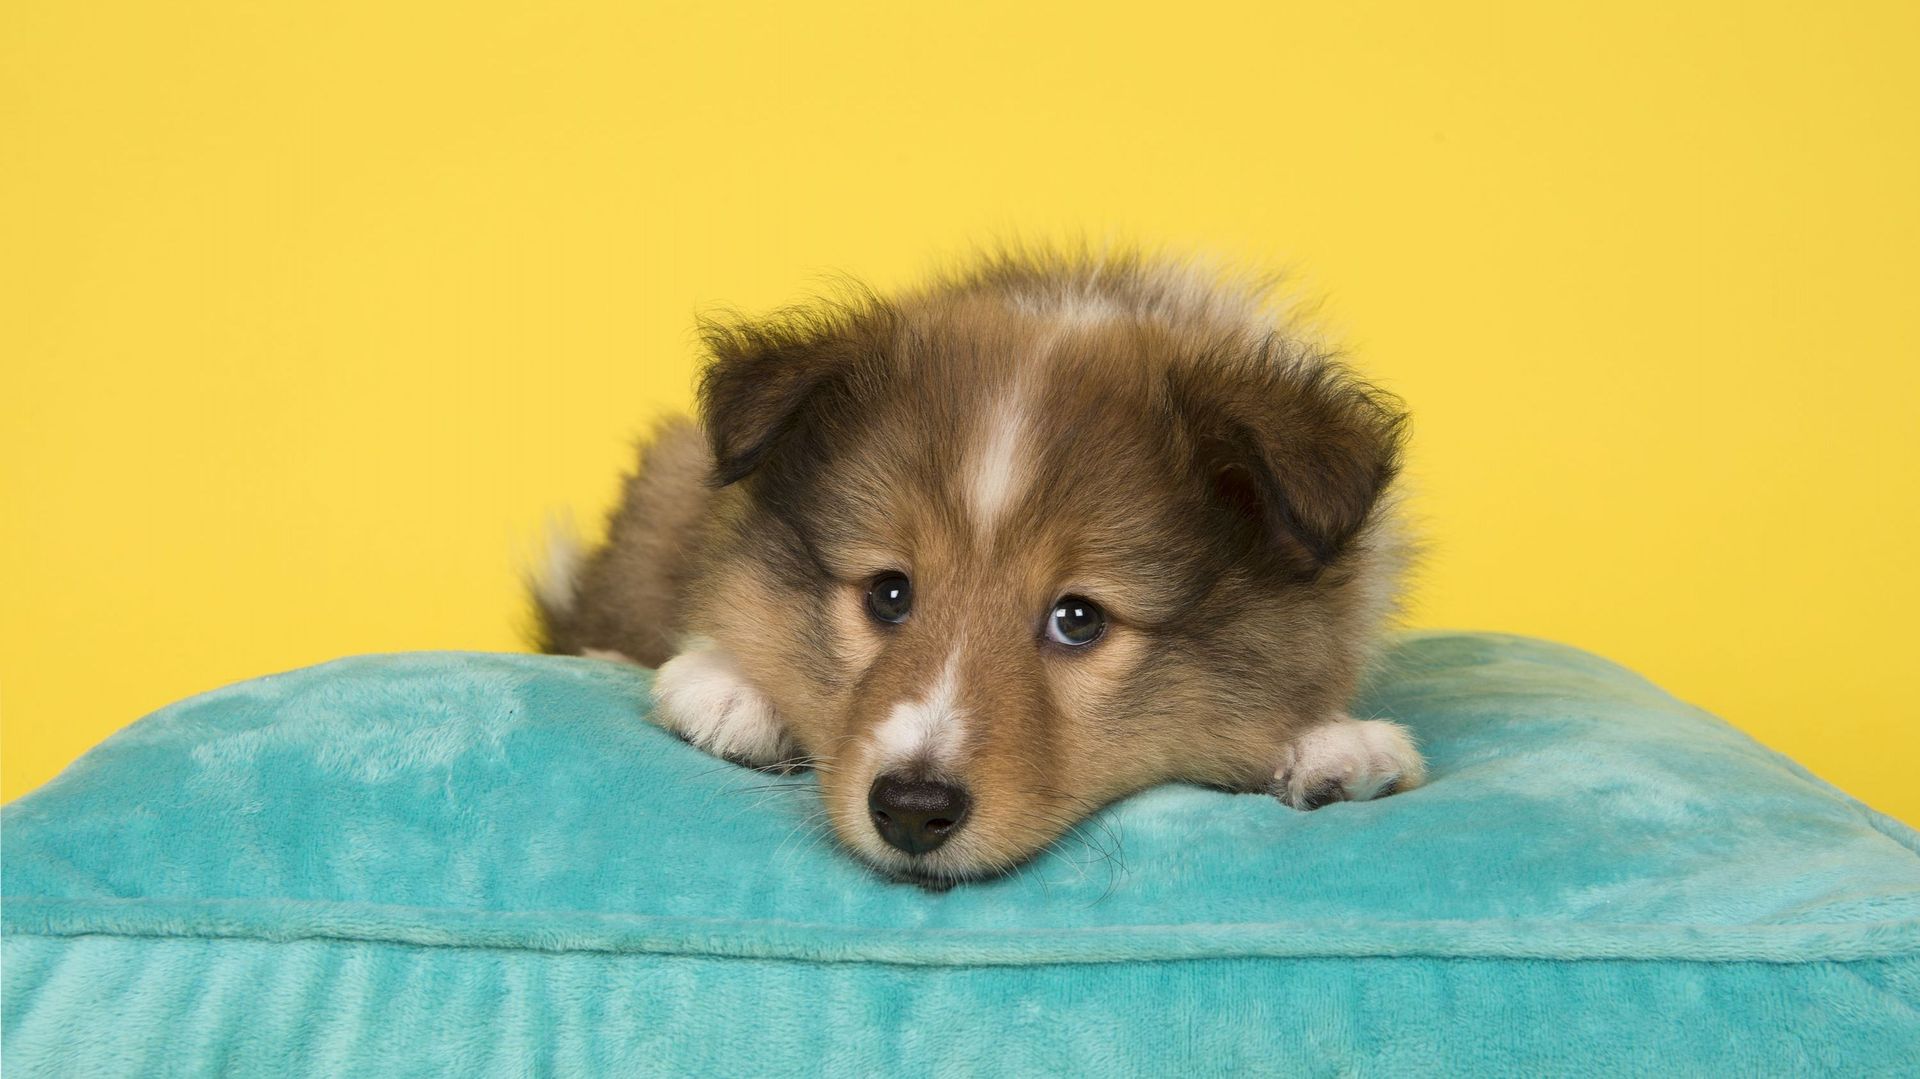 Cute shetland sheepdog puppy lying down on a blue cushion 